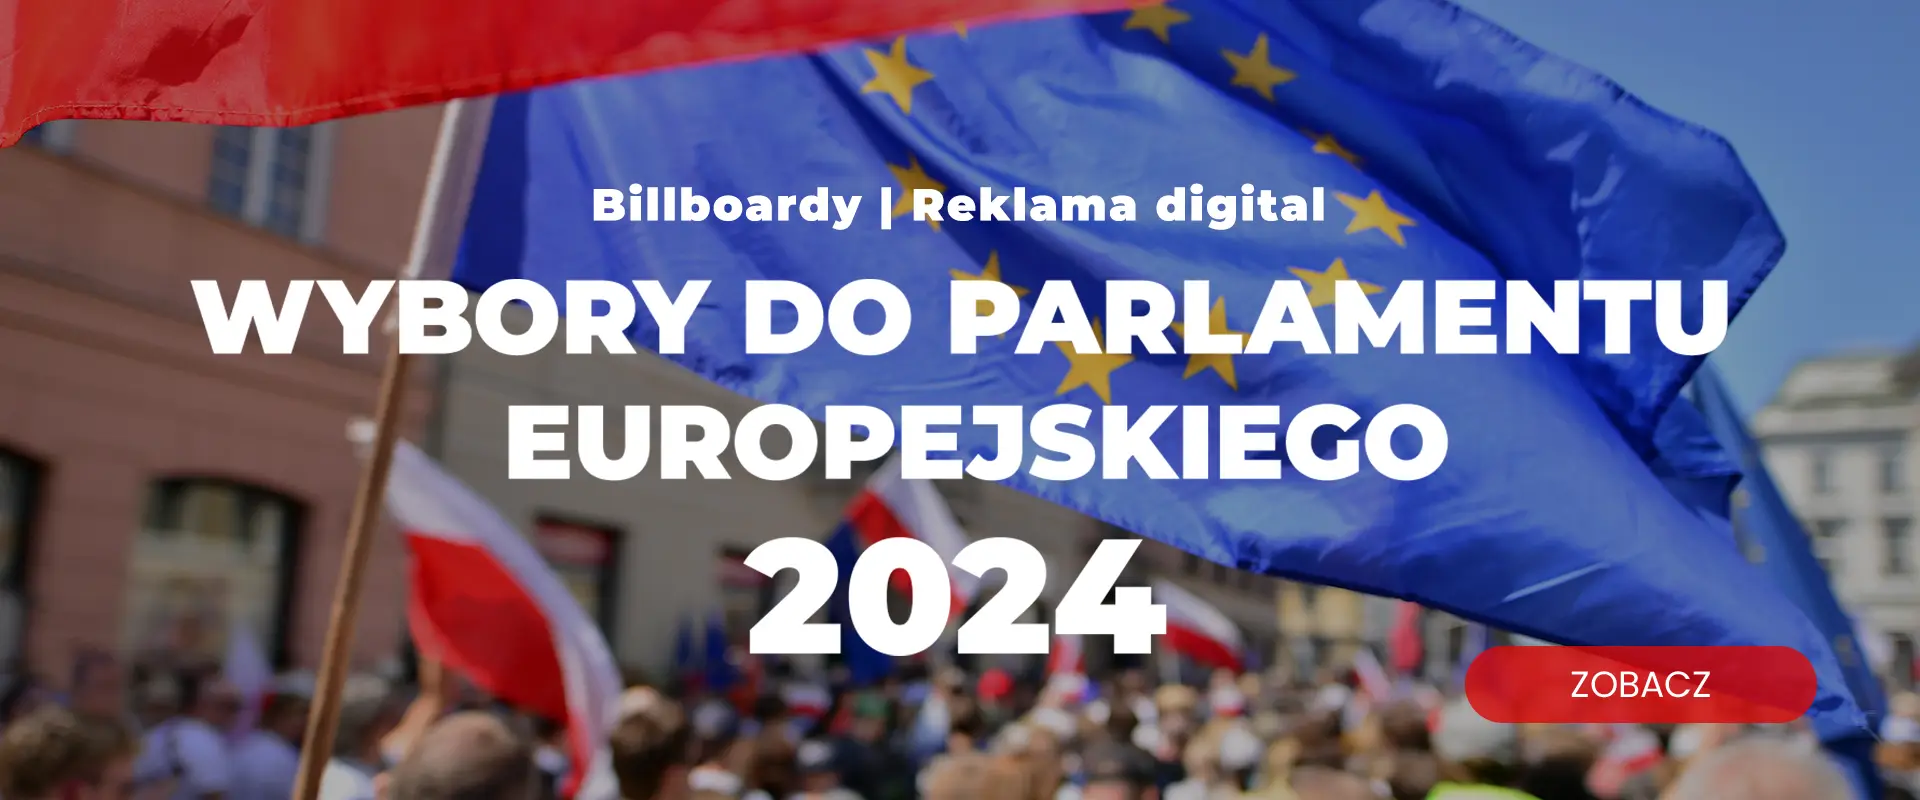 Wybory 2024, billboardy, reklama polityczna